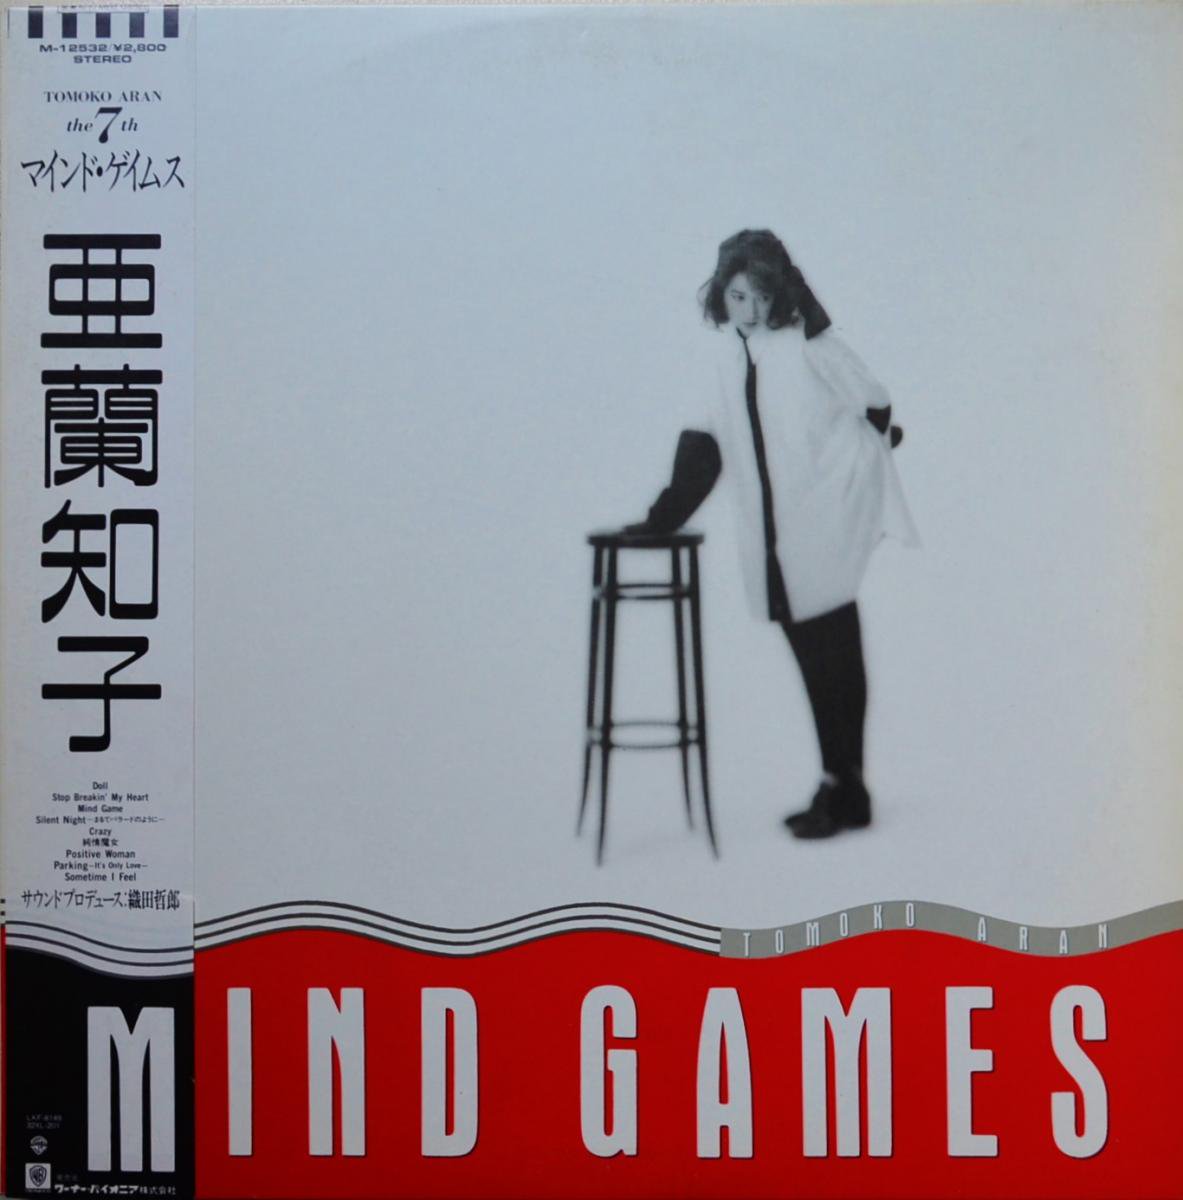 亜蘭知子 TOMOKO ARAN / マインド・ゲイムス MIND GAMES (LP) - HIP 